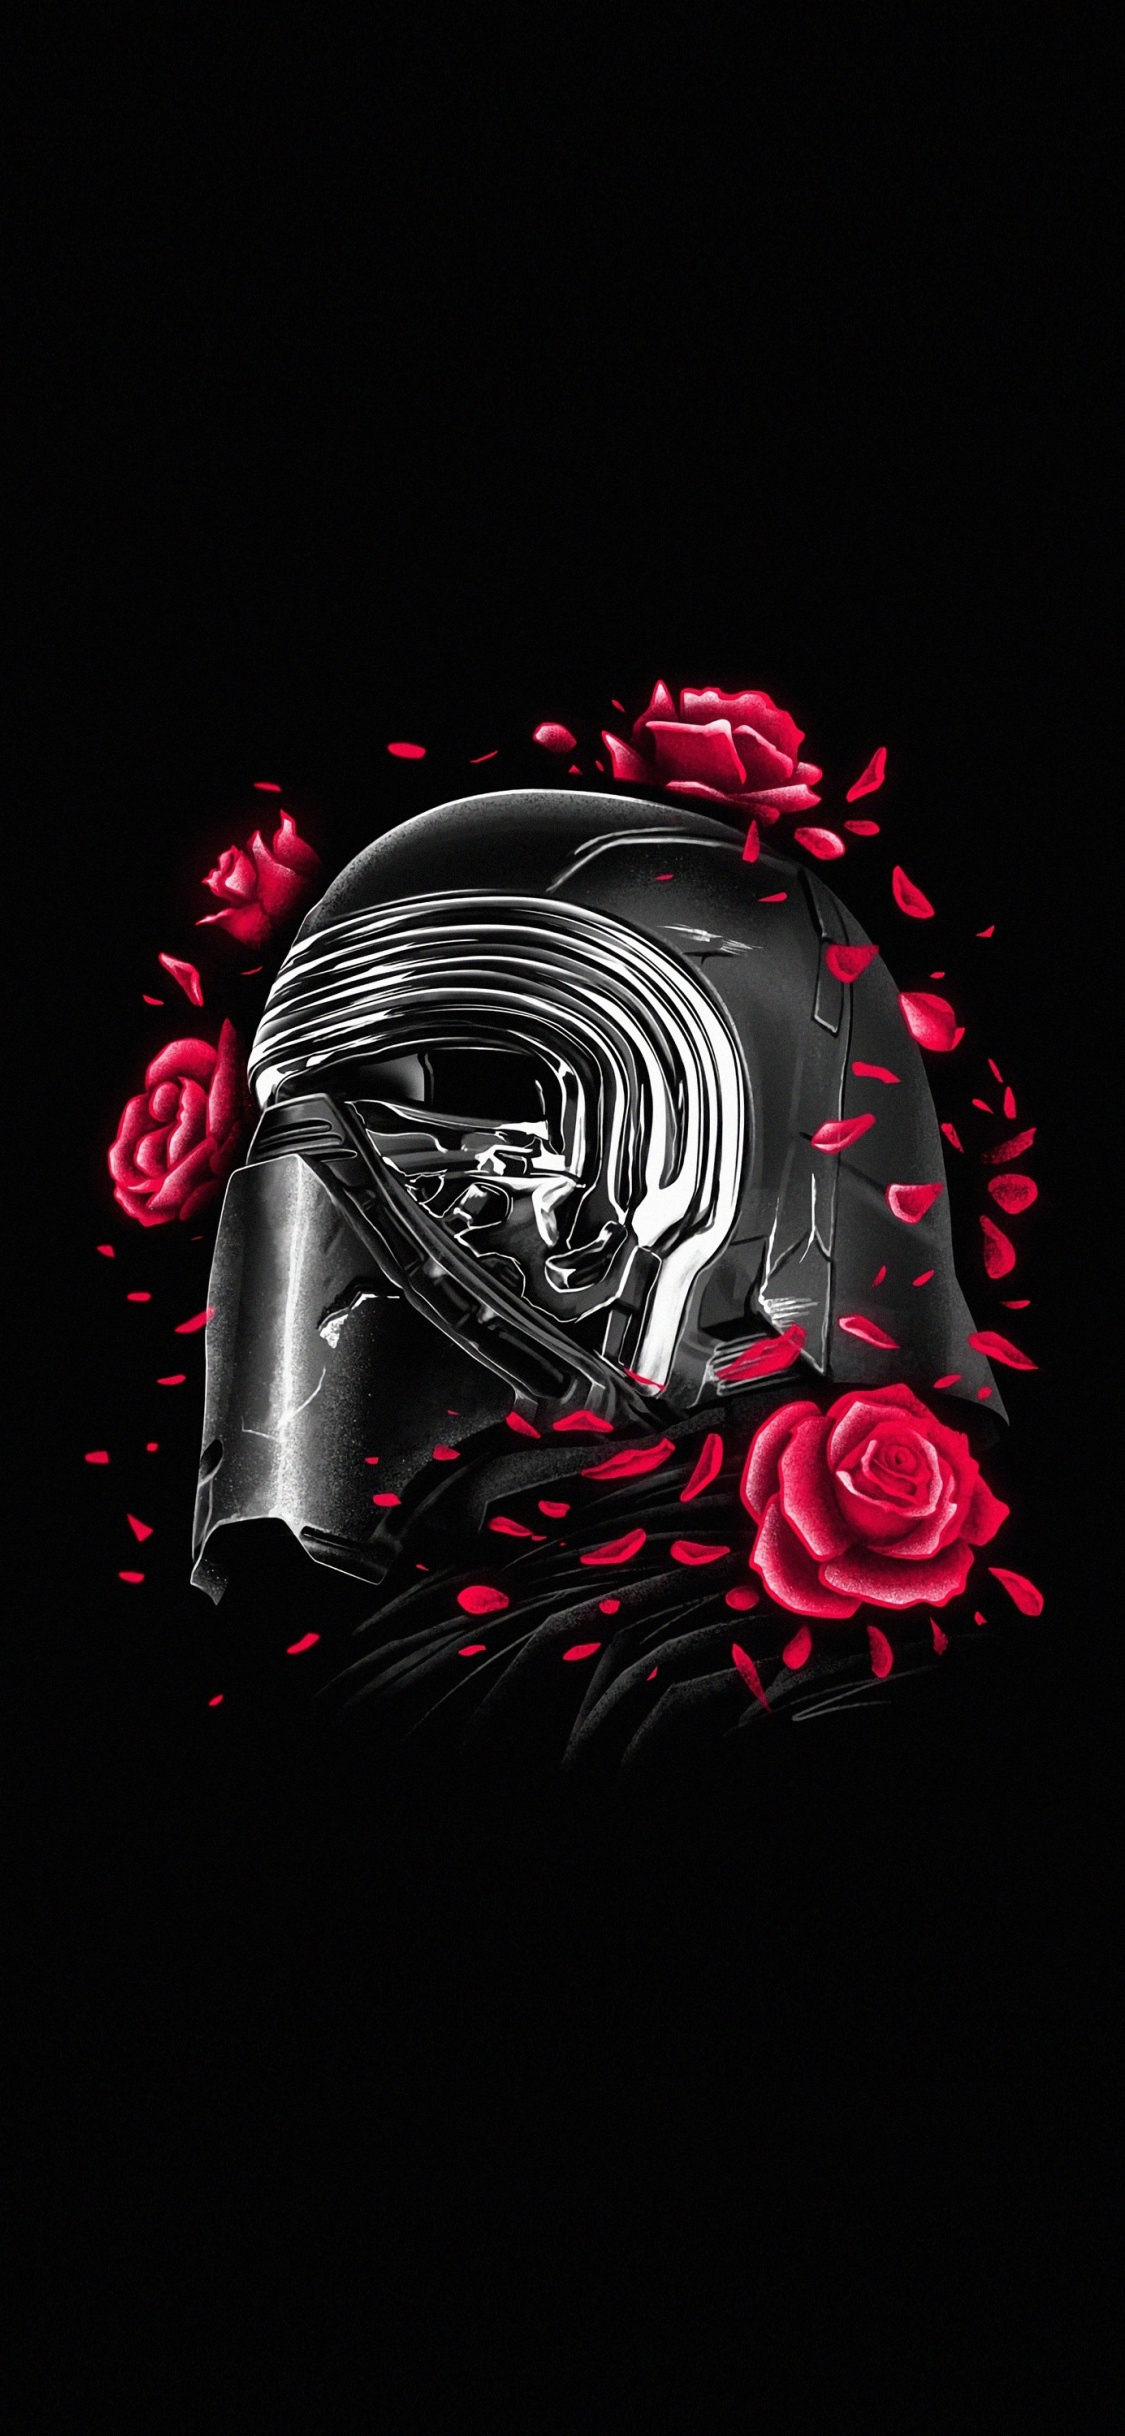 Kylo Ren, Helmet And Roses, Star Wars, Minimal, Wallpaper - Minimalist Star Wars Iphone - HD Wallpaper 